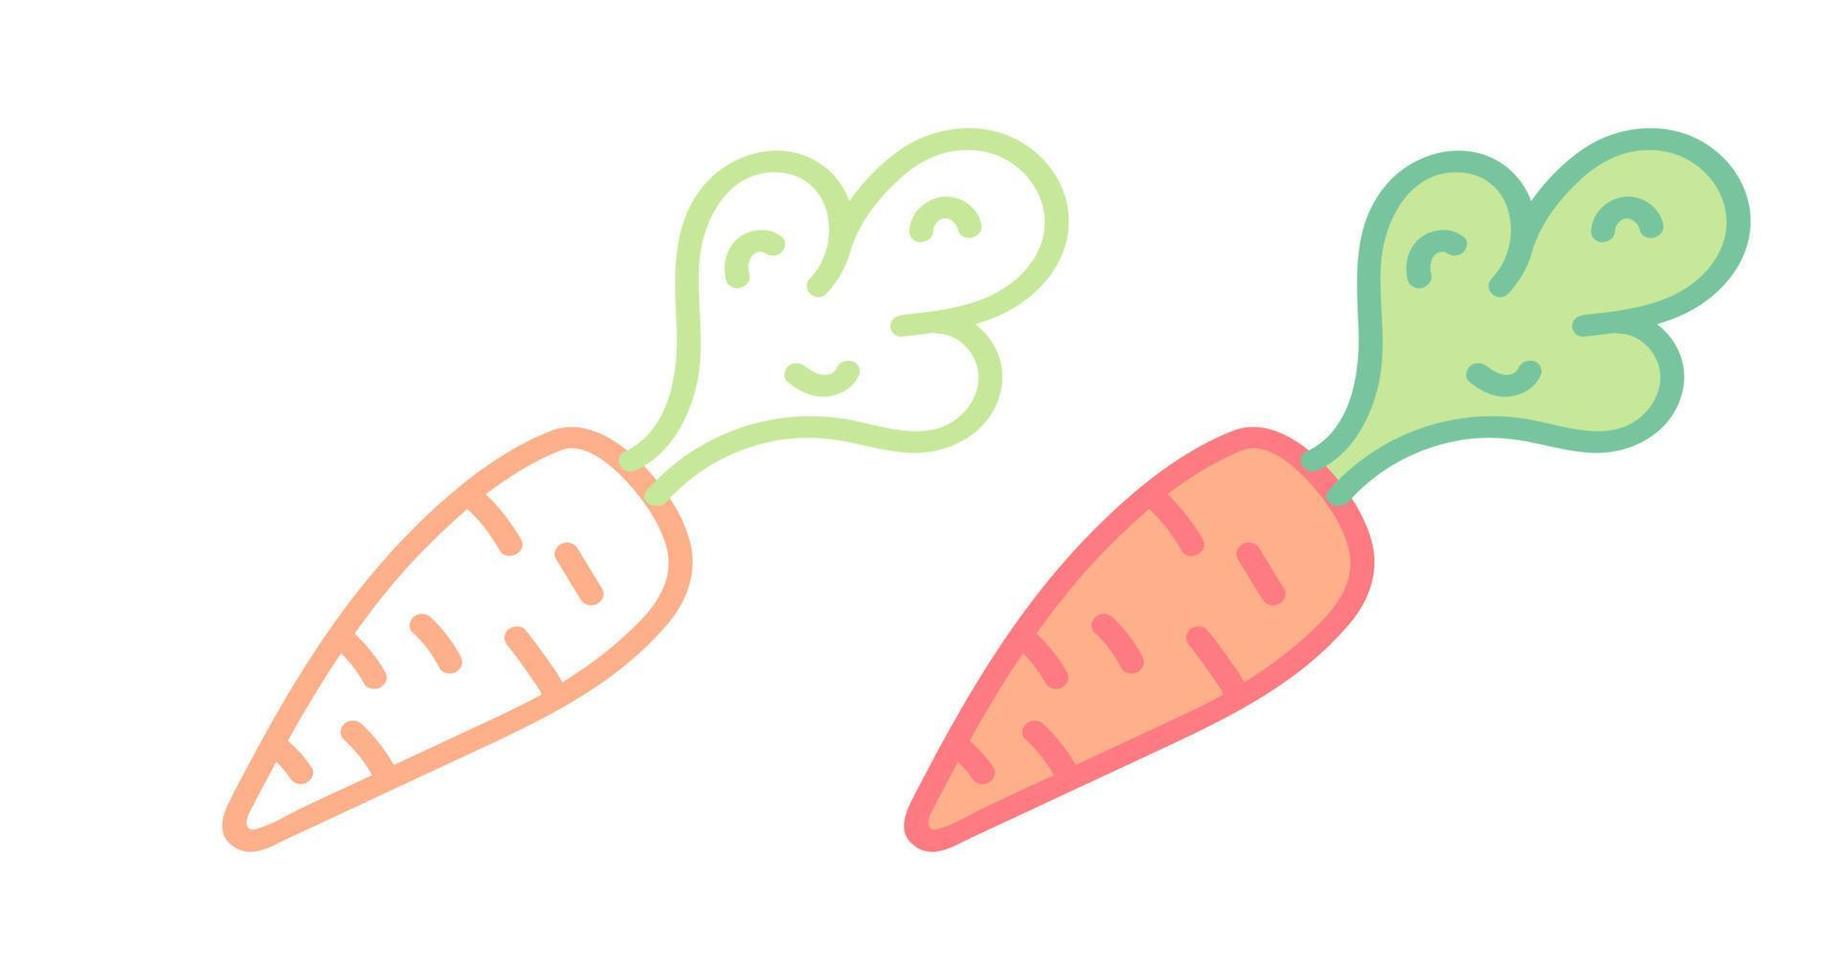 Vektor-Set-Icons von Karotten. Vektor-Illustration von Karotten. handgezeichnetes Gemüse. vektor